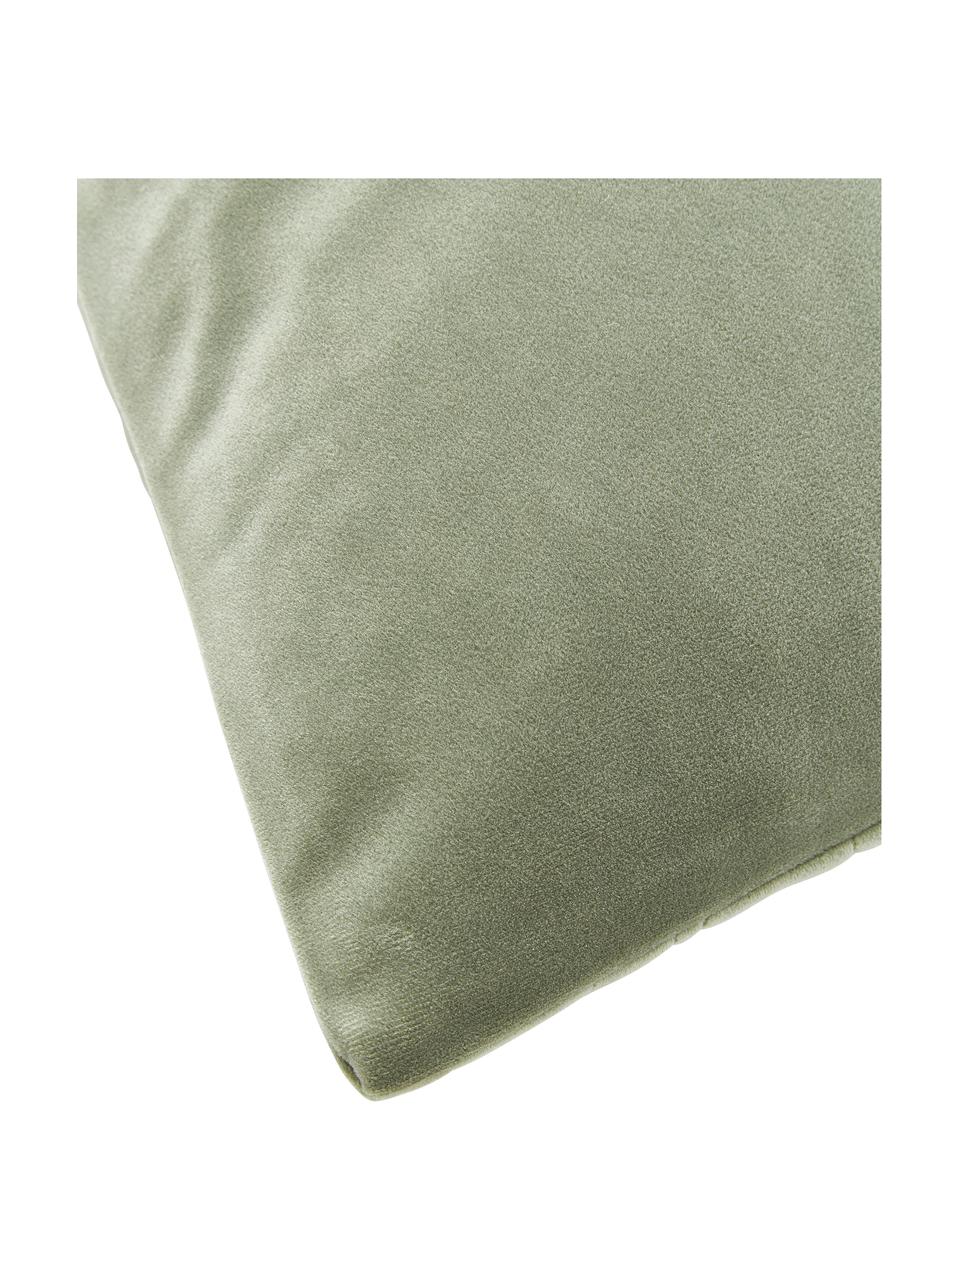 Poszewka na poduszkę z aksamitu Hera, 100% poliester z recyklingu, Szałwiowy zielony aksamit, S 45 x D 45 cm